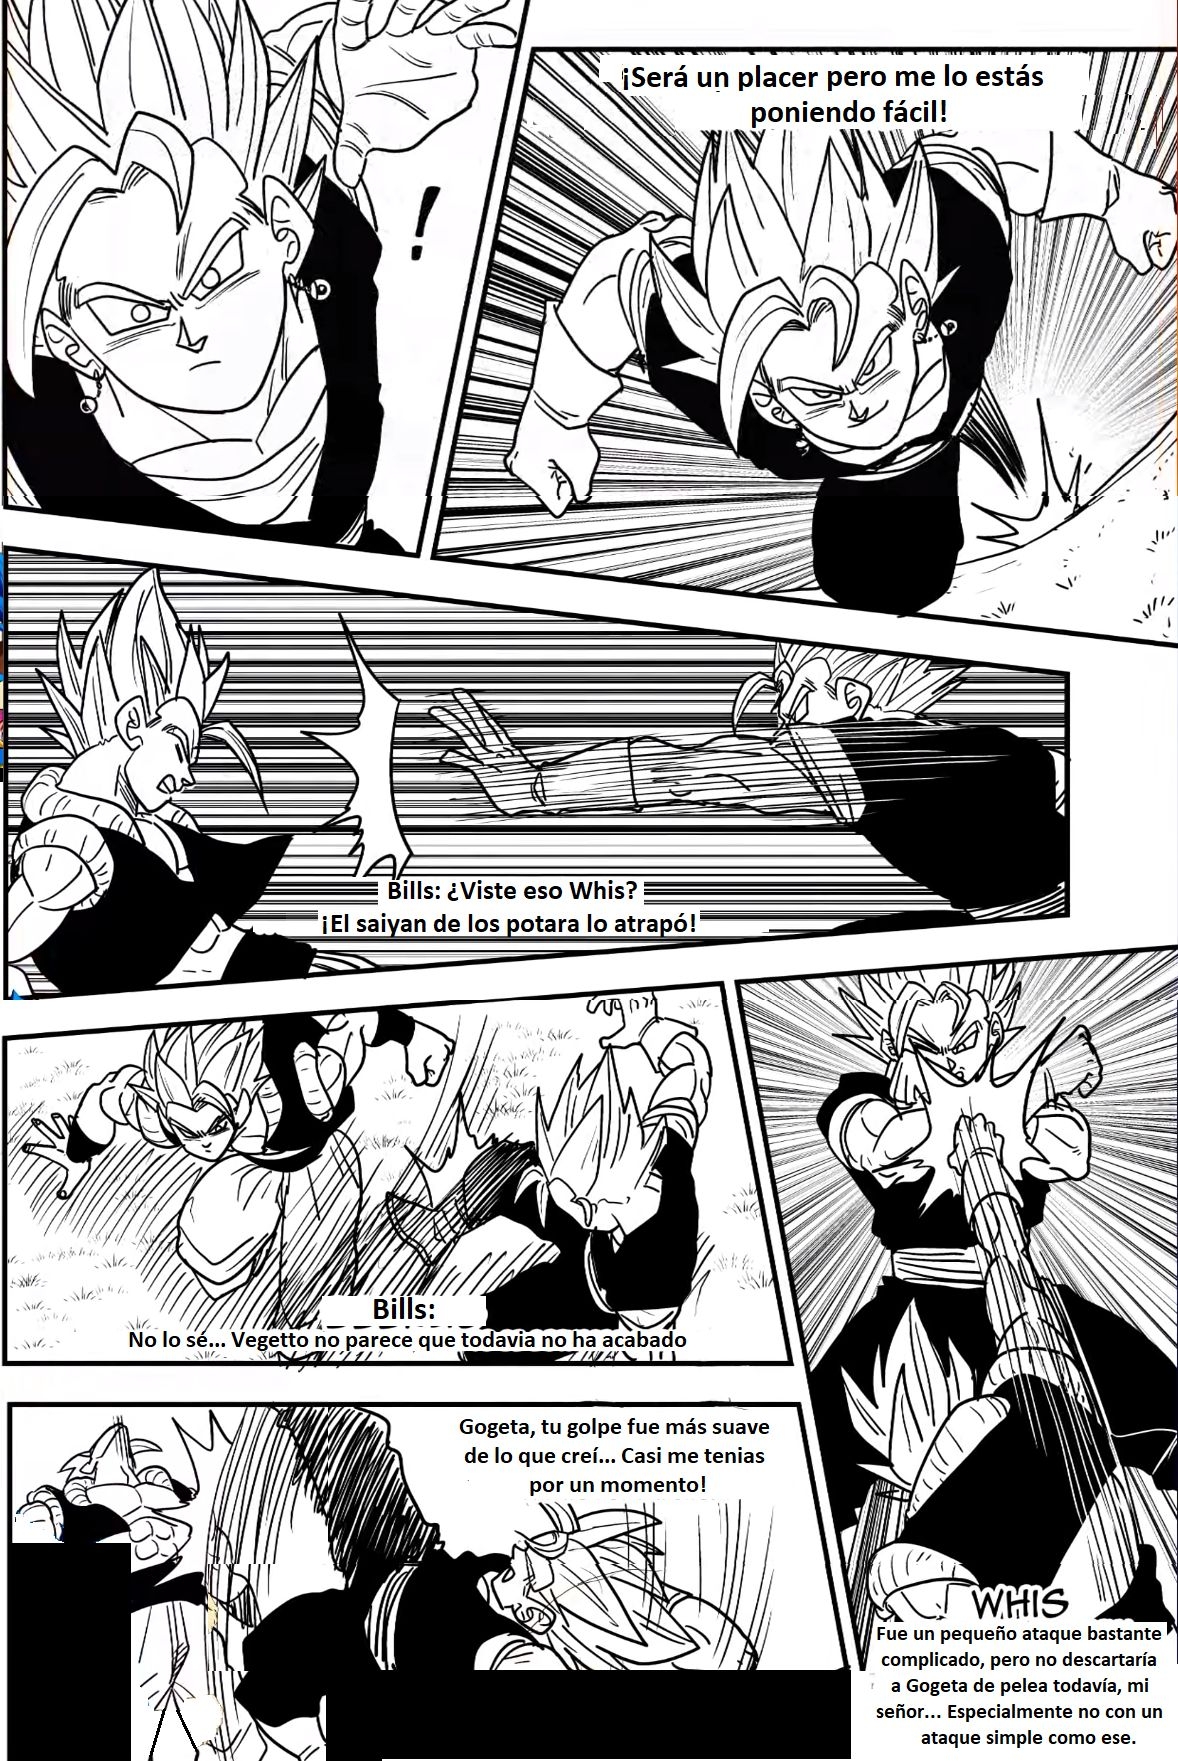 Beyond Dragon Ball Super: Gogeta And Vegito Meet! Vegito Mocks Gogeta! The Battle Of Fusions Begins! 11